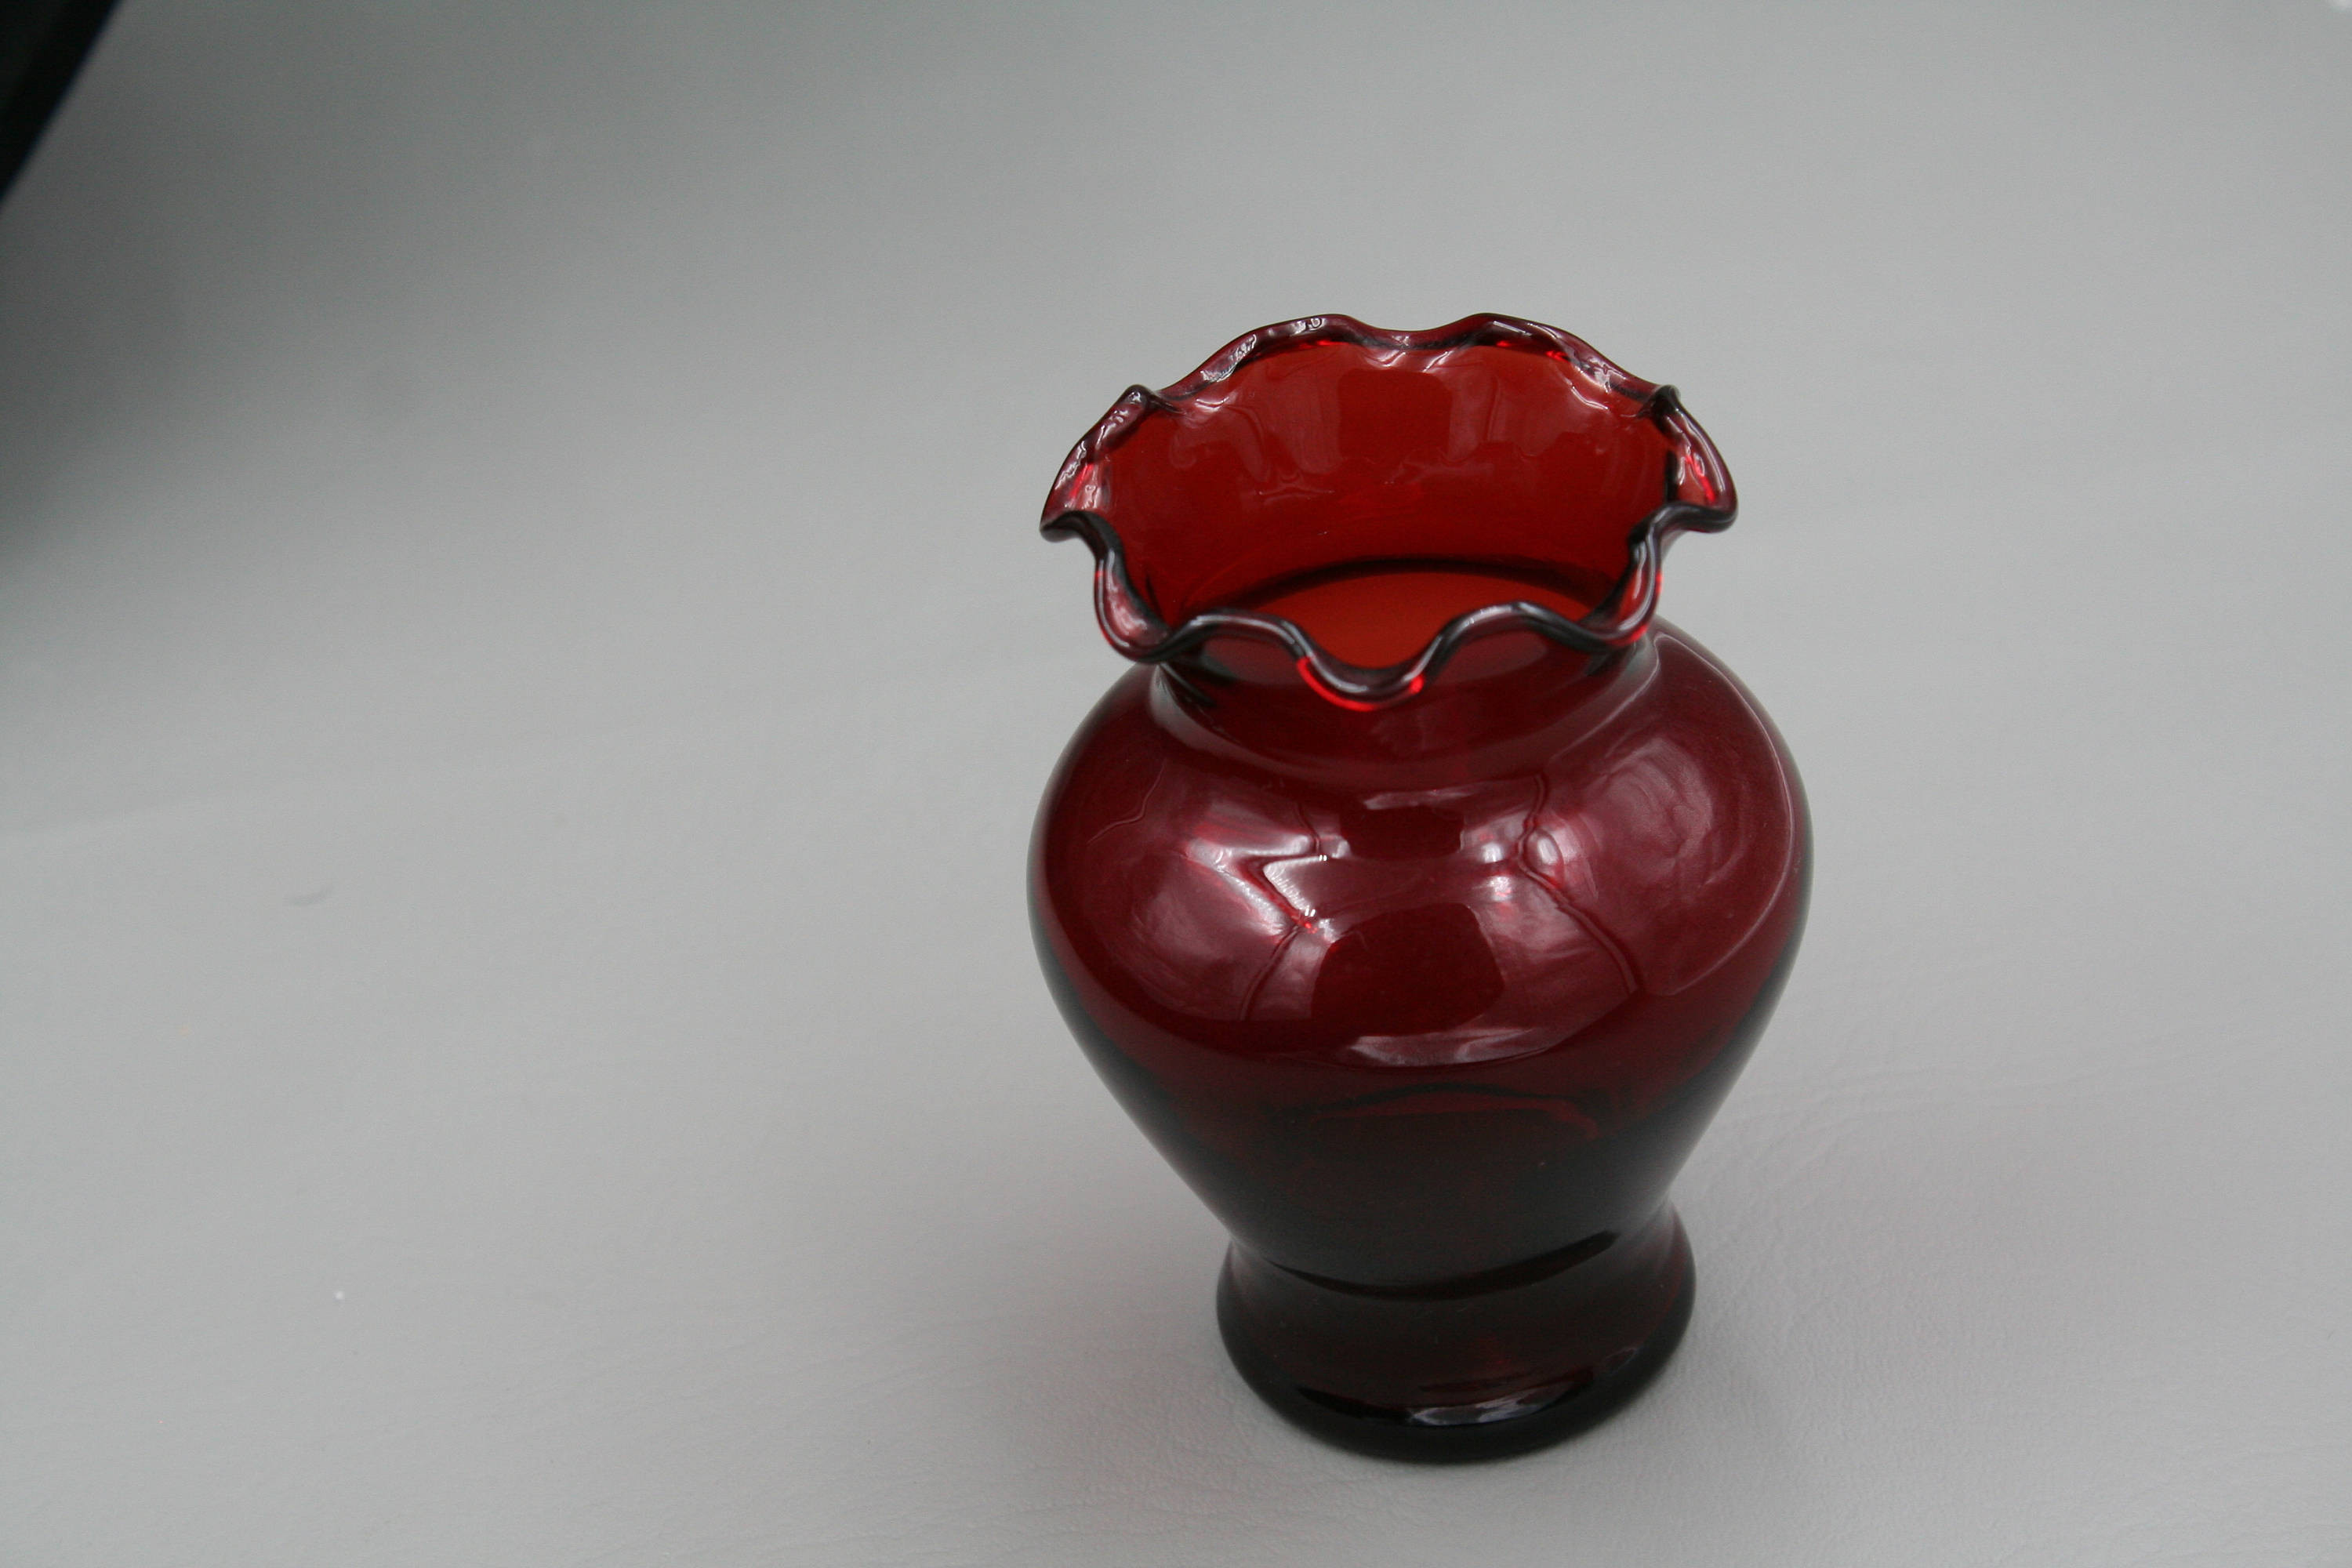 30 Stylish Large Ceramic Vases and Urns 2024 free download large ceramic vases and urns of cranberry red glass vase pertaining to dc29fc294c28ezoom